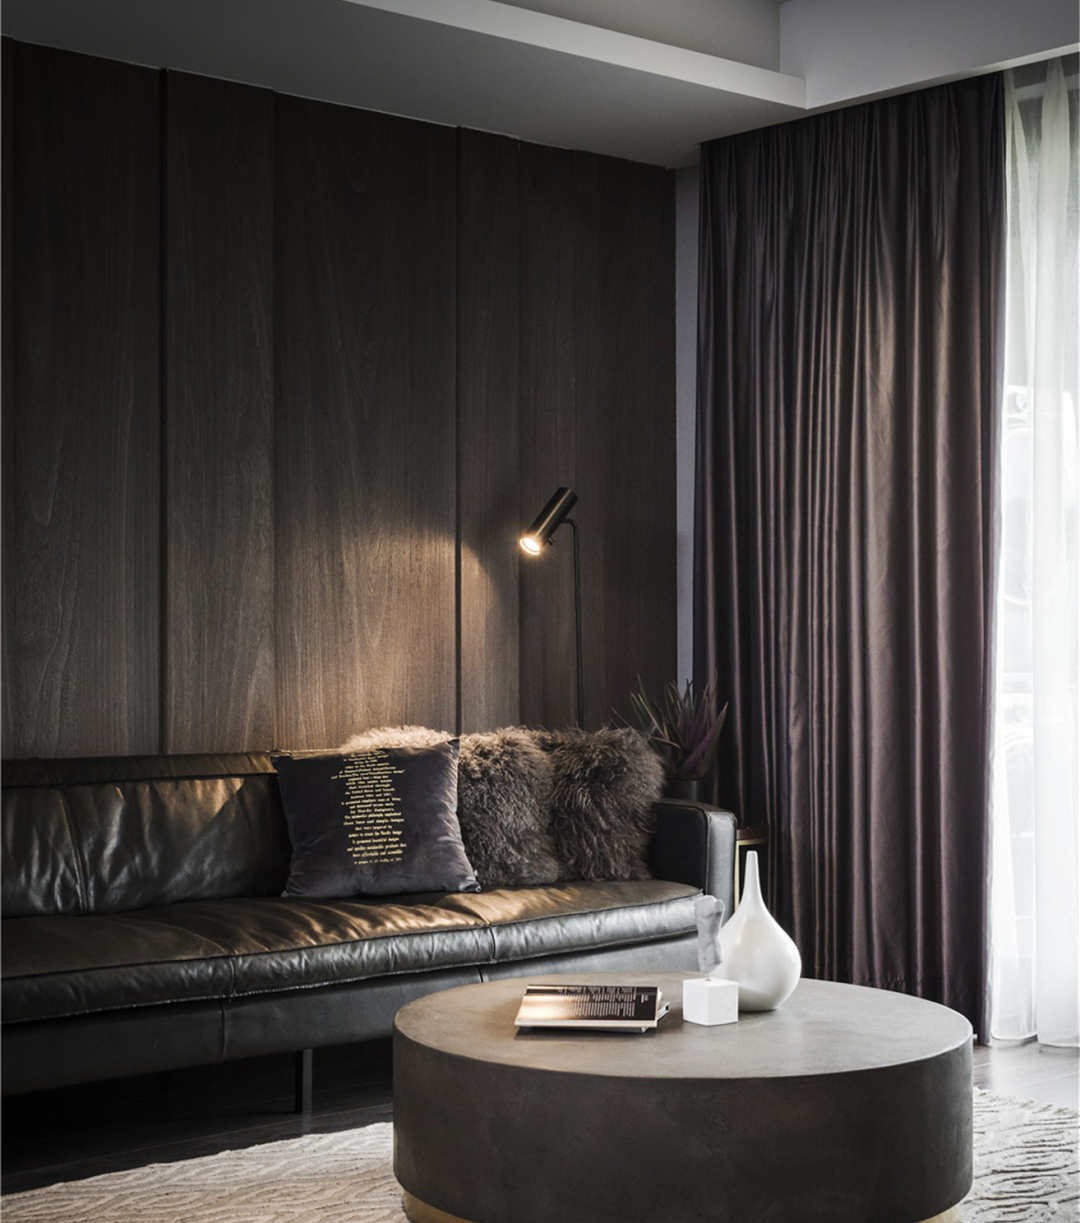 胡桃木色石棉板沙发背景墙,深沉而富有品质感.